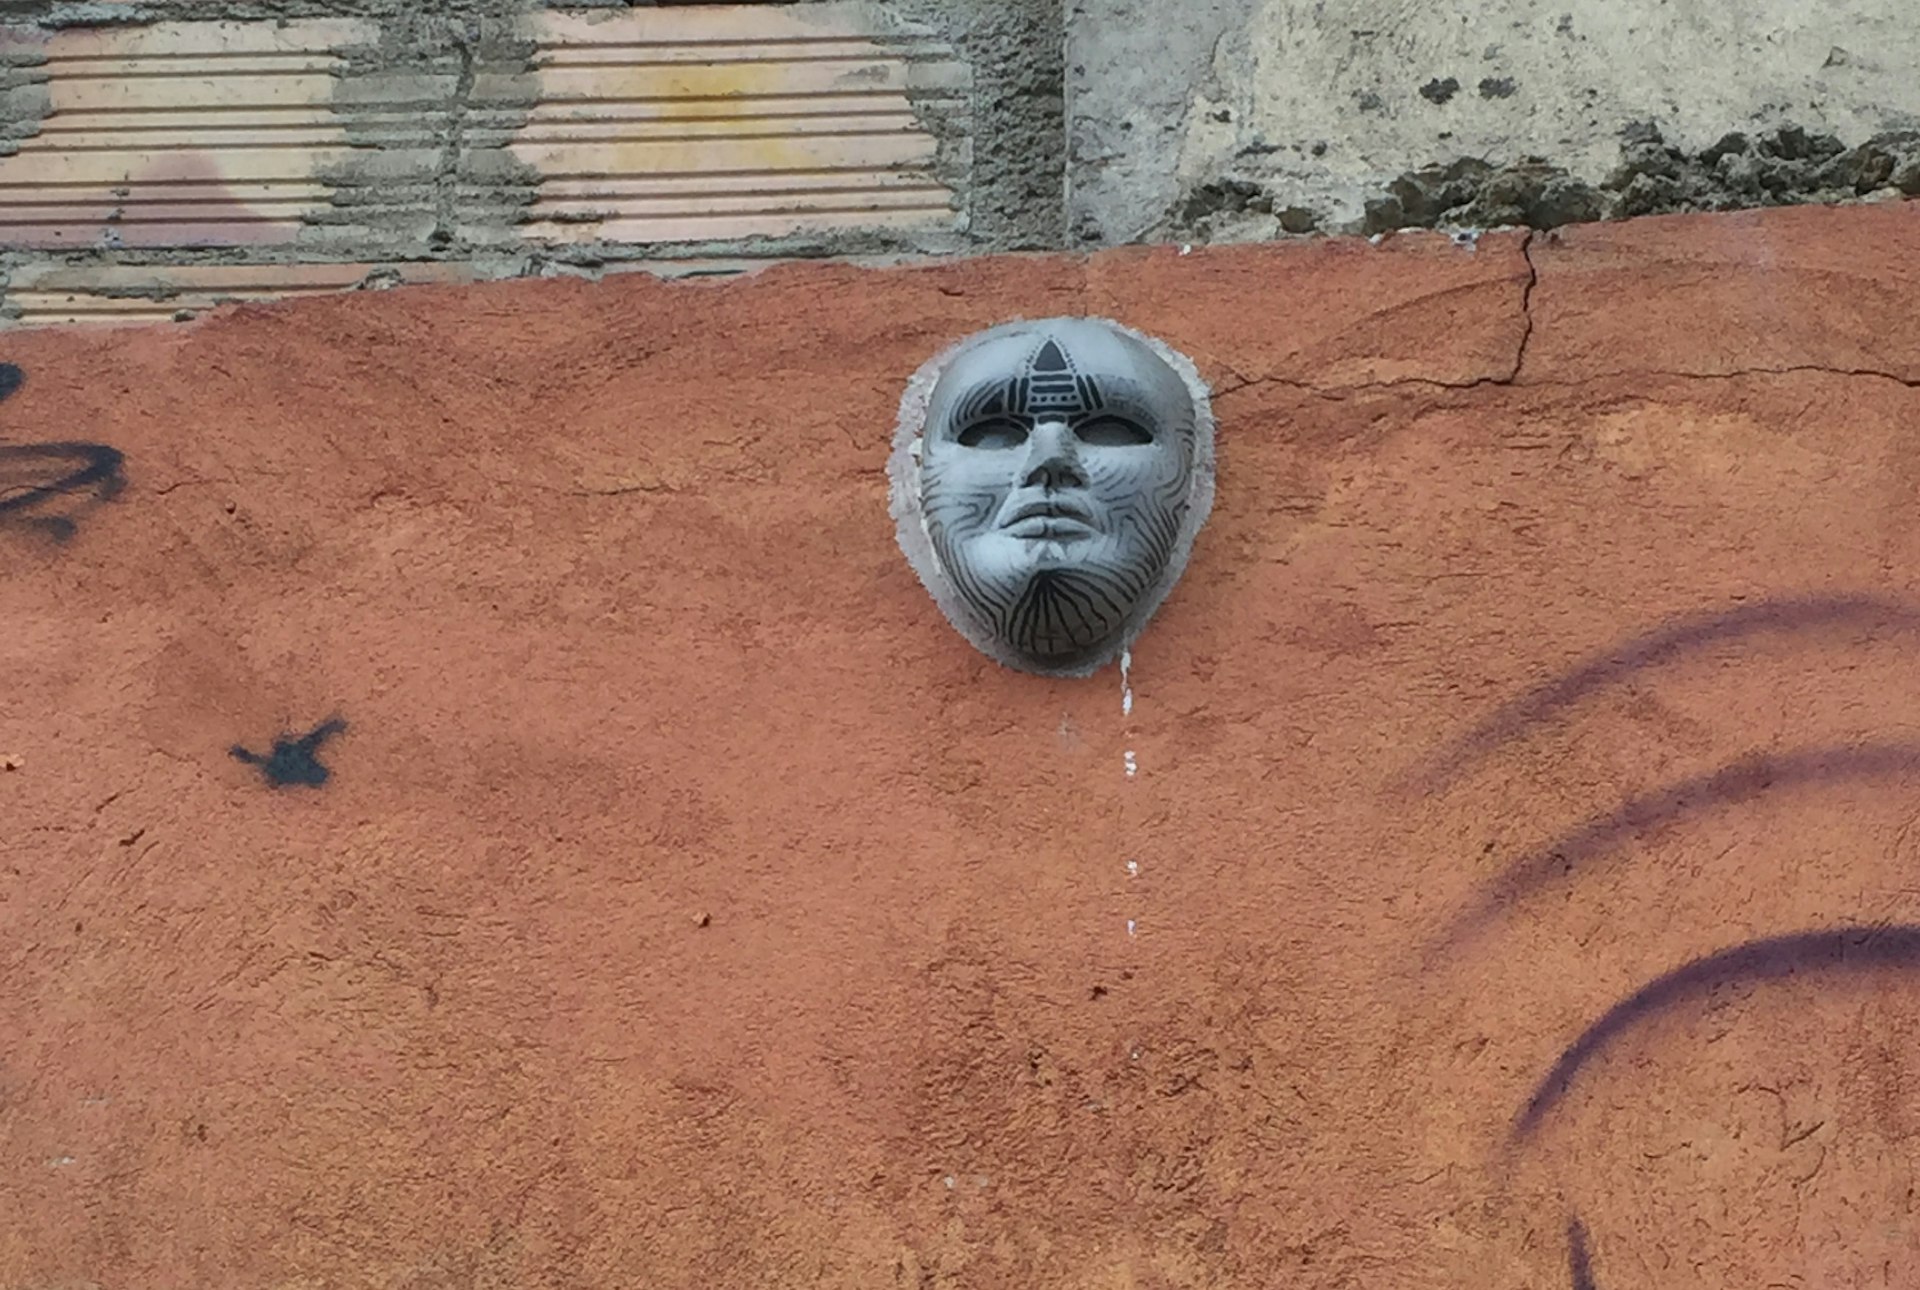 Bogotá street art